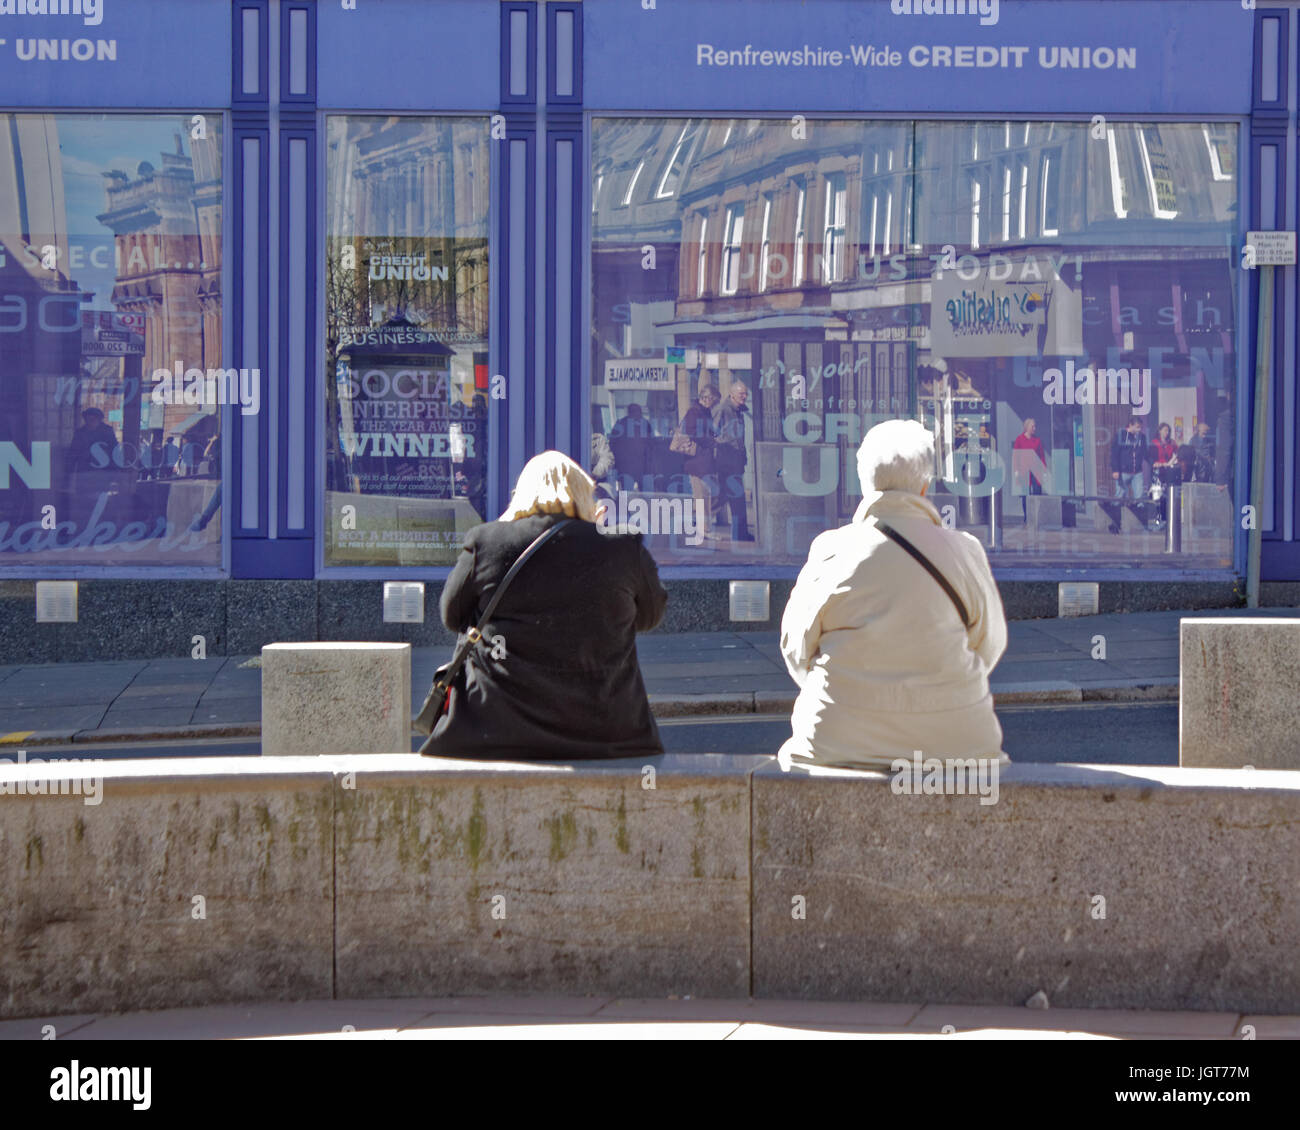 Paisley Ecosse copains sur un banc sur un très beau jour, la rue principale en face de la caisse populaire locale Banque D'Images